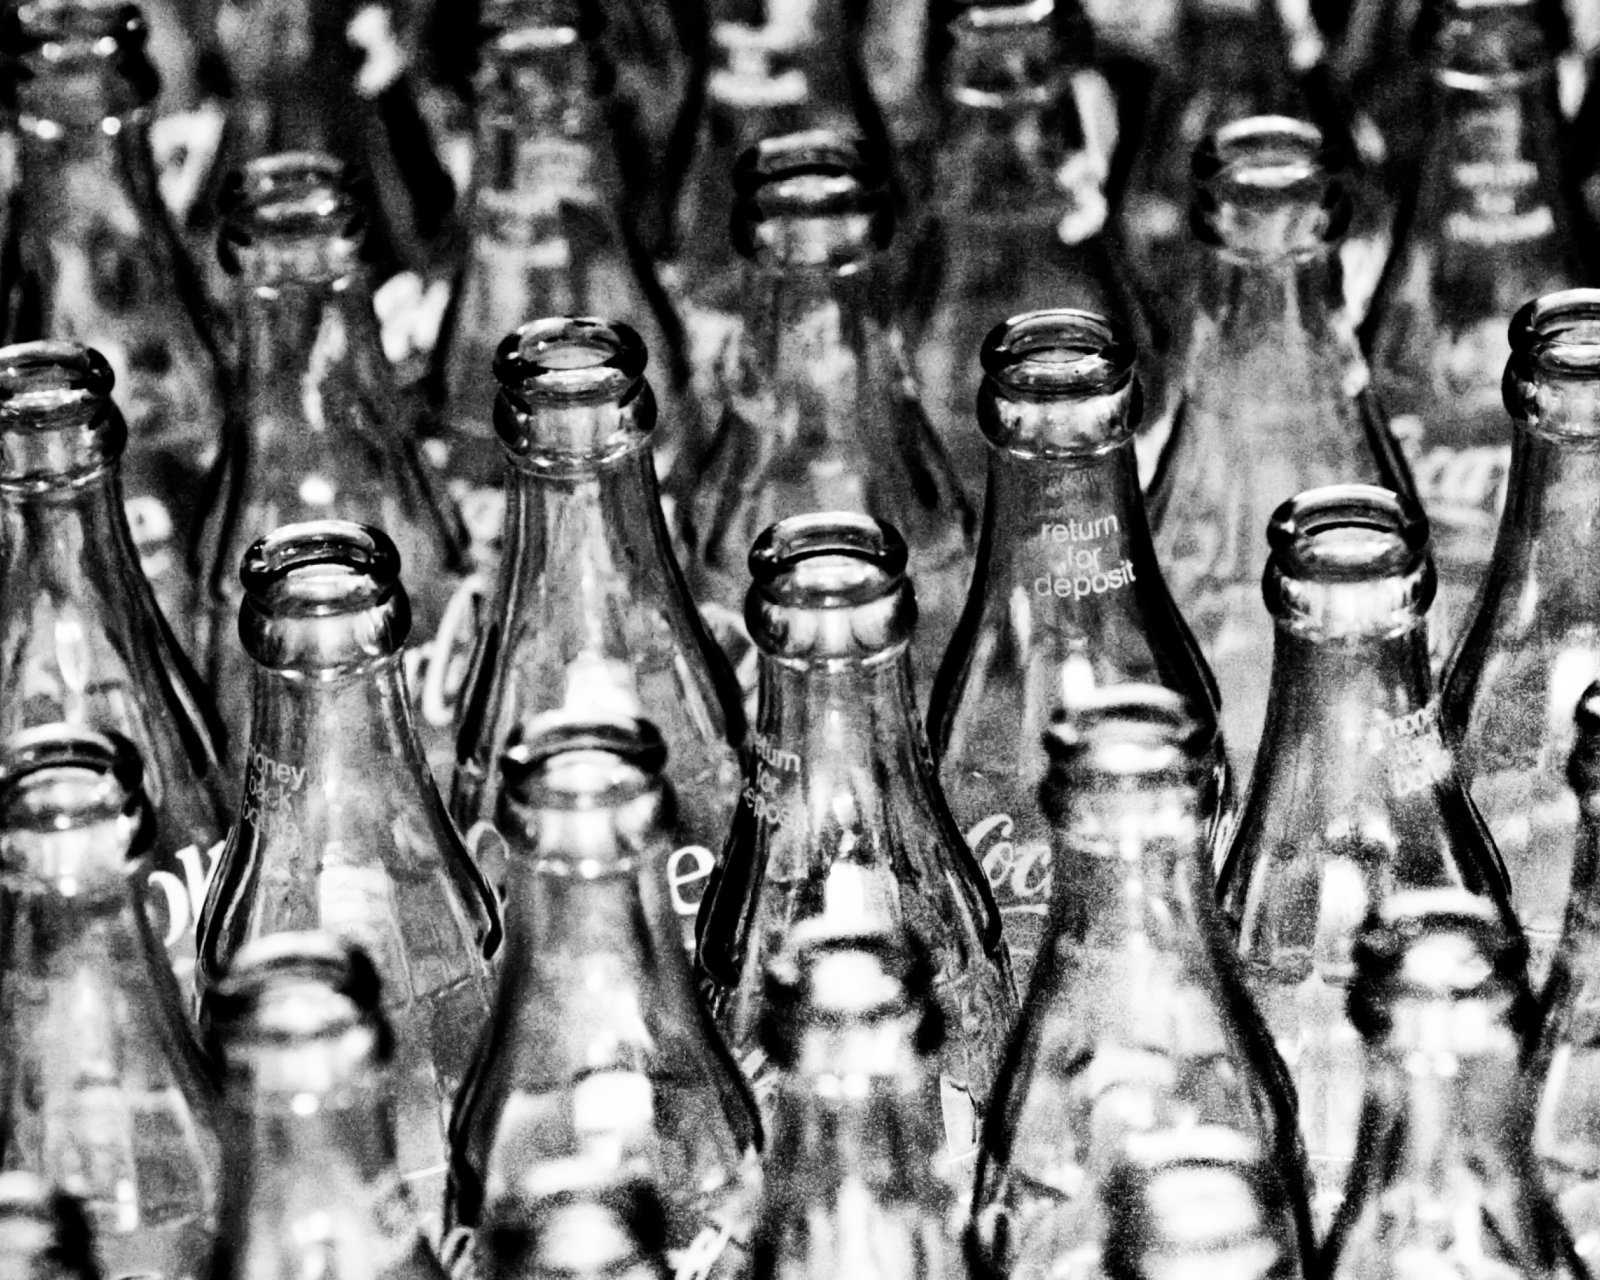 Sfondi Coca Cola Bottles 1600x1280